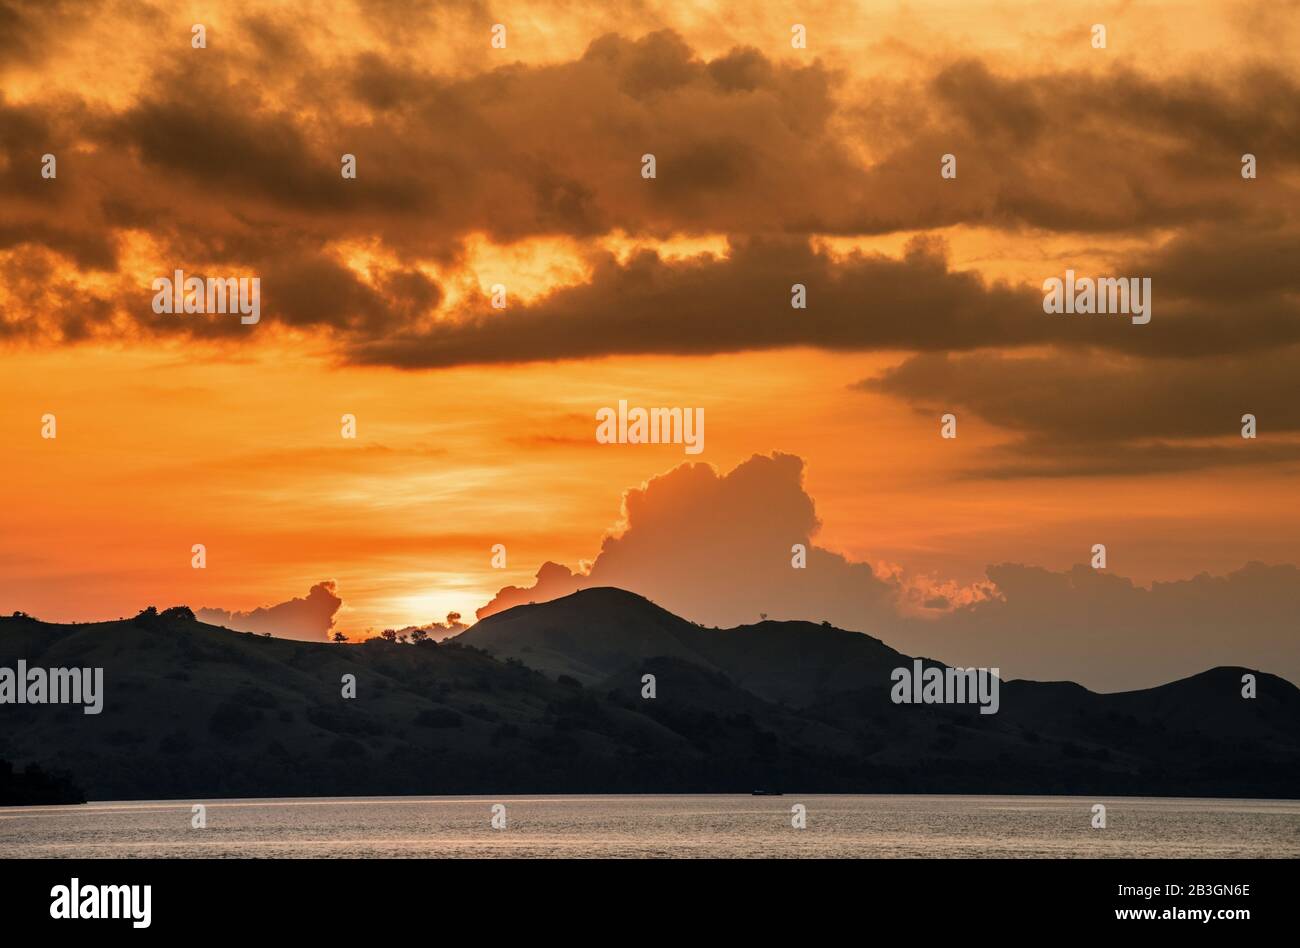 Dämmerung vor Sonnenuntergang an der Küste des Ozeans. Meer und Berge Landscap. Komodo Island. Molukken, indonesische Maluku, Gewürzinseln, indonesische Inseln Stockfoto